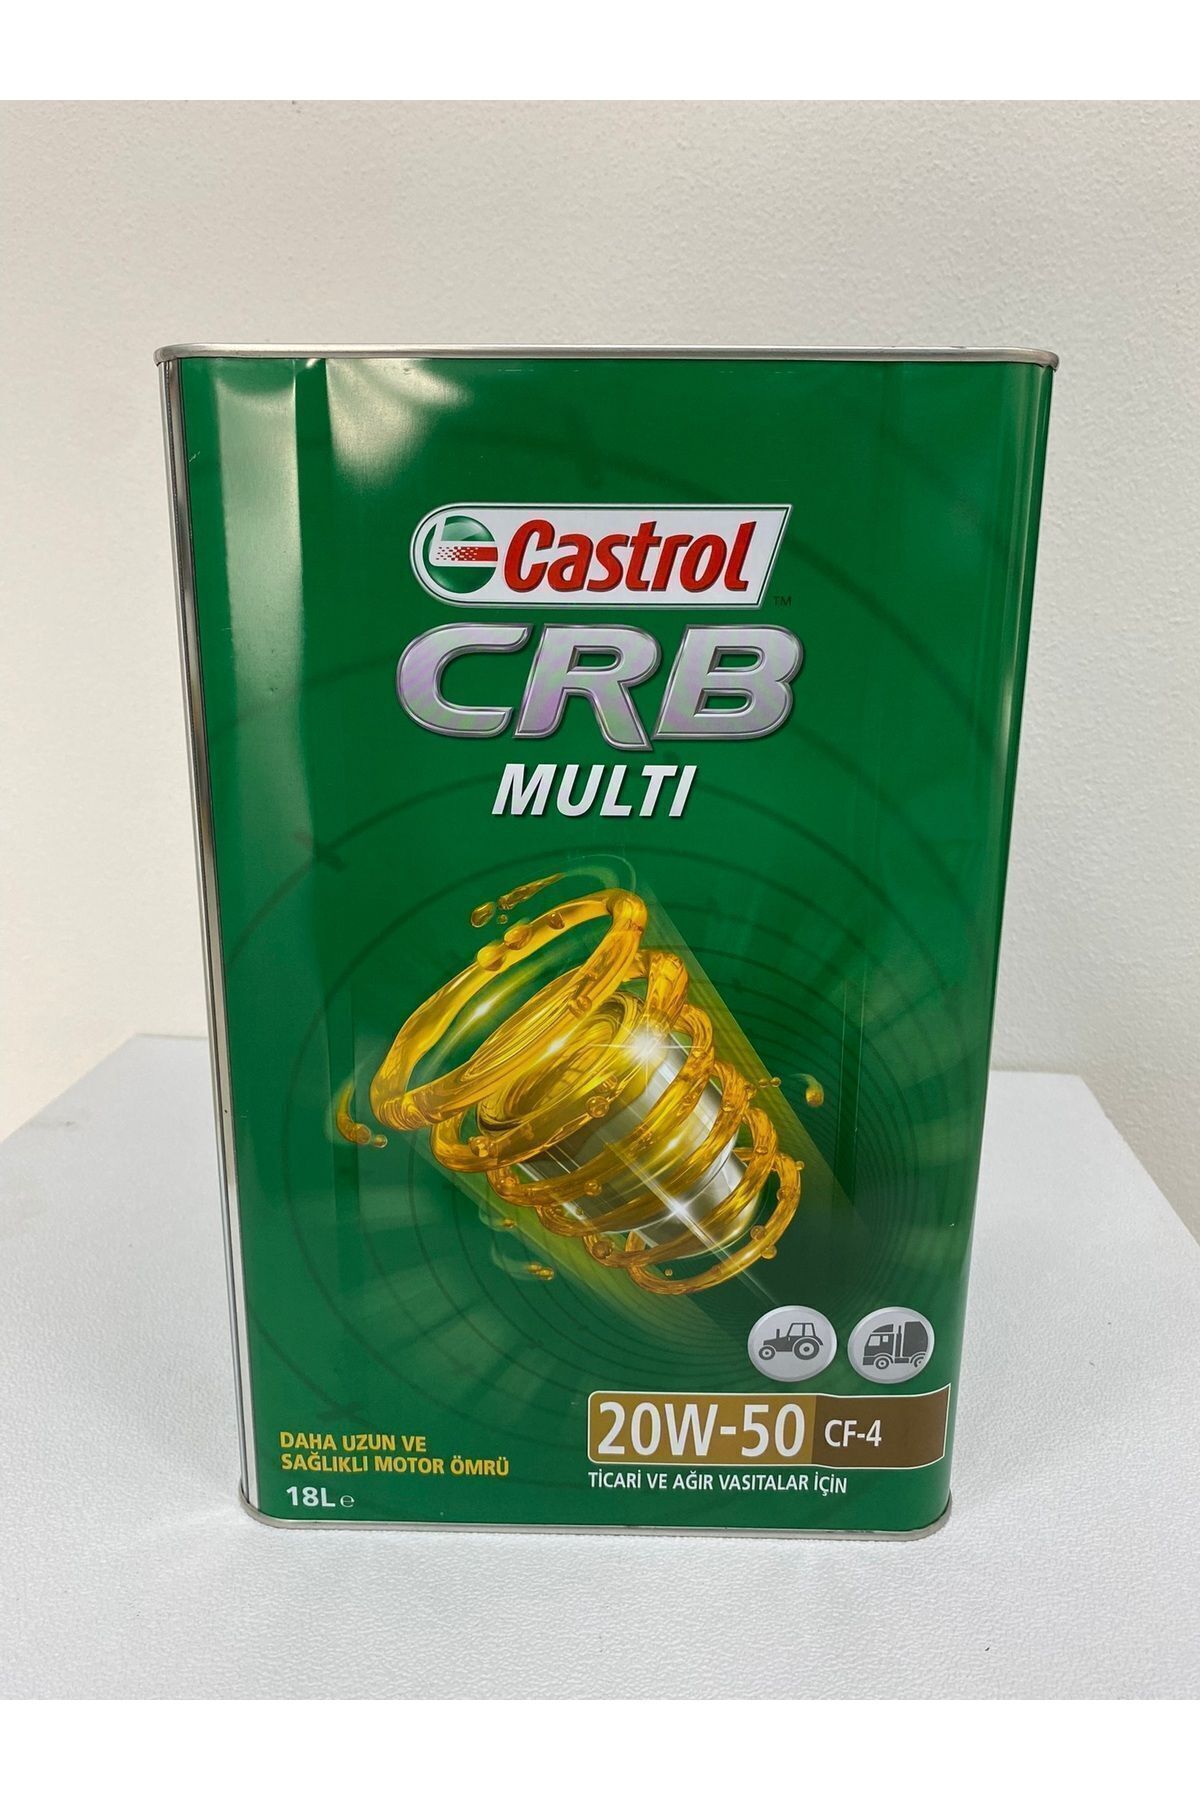 Castrol CRB Multi 20w50 API CF-4